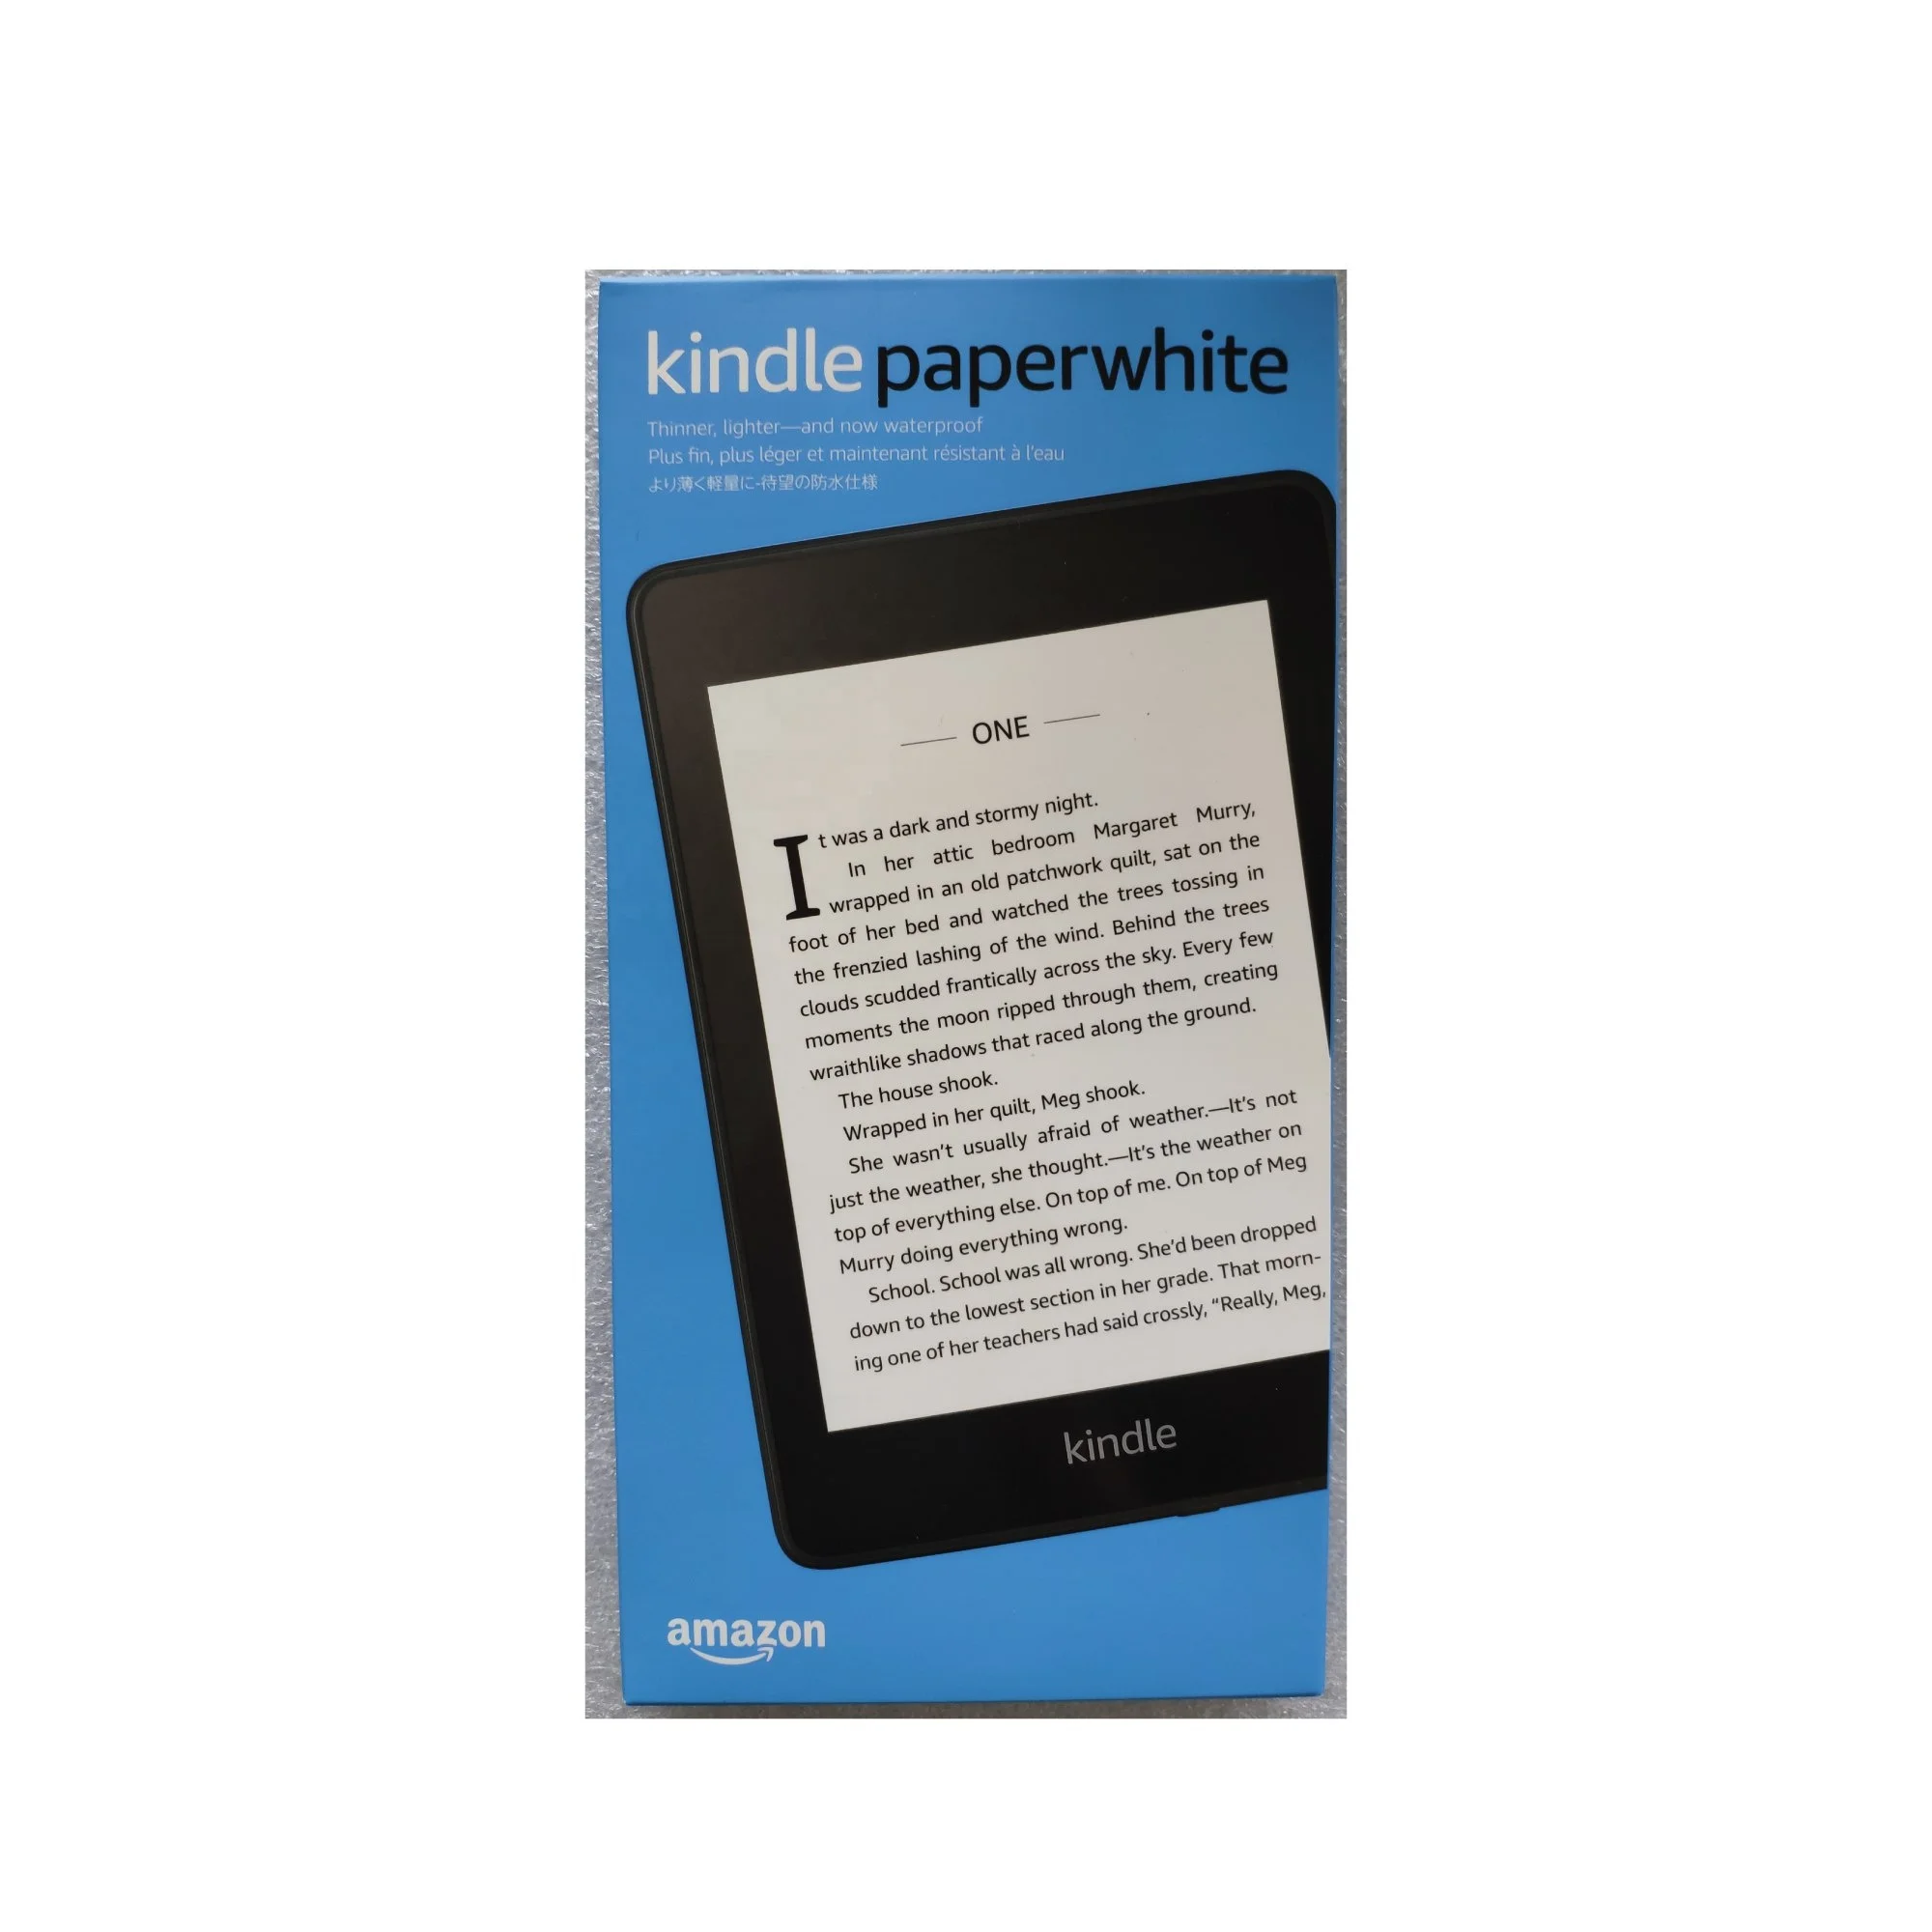 Kindle paperwhite adalah